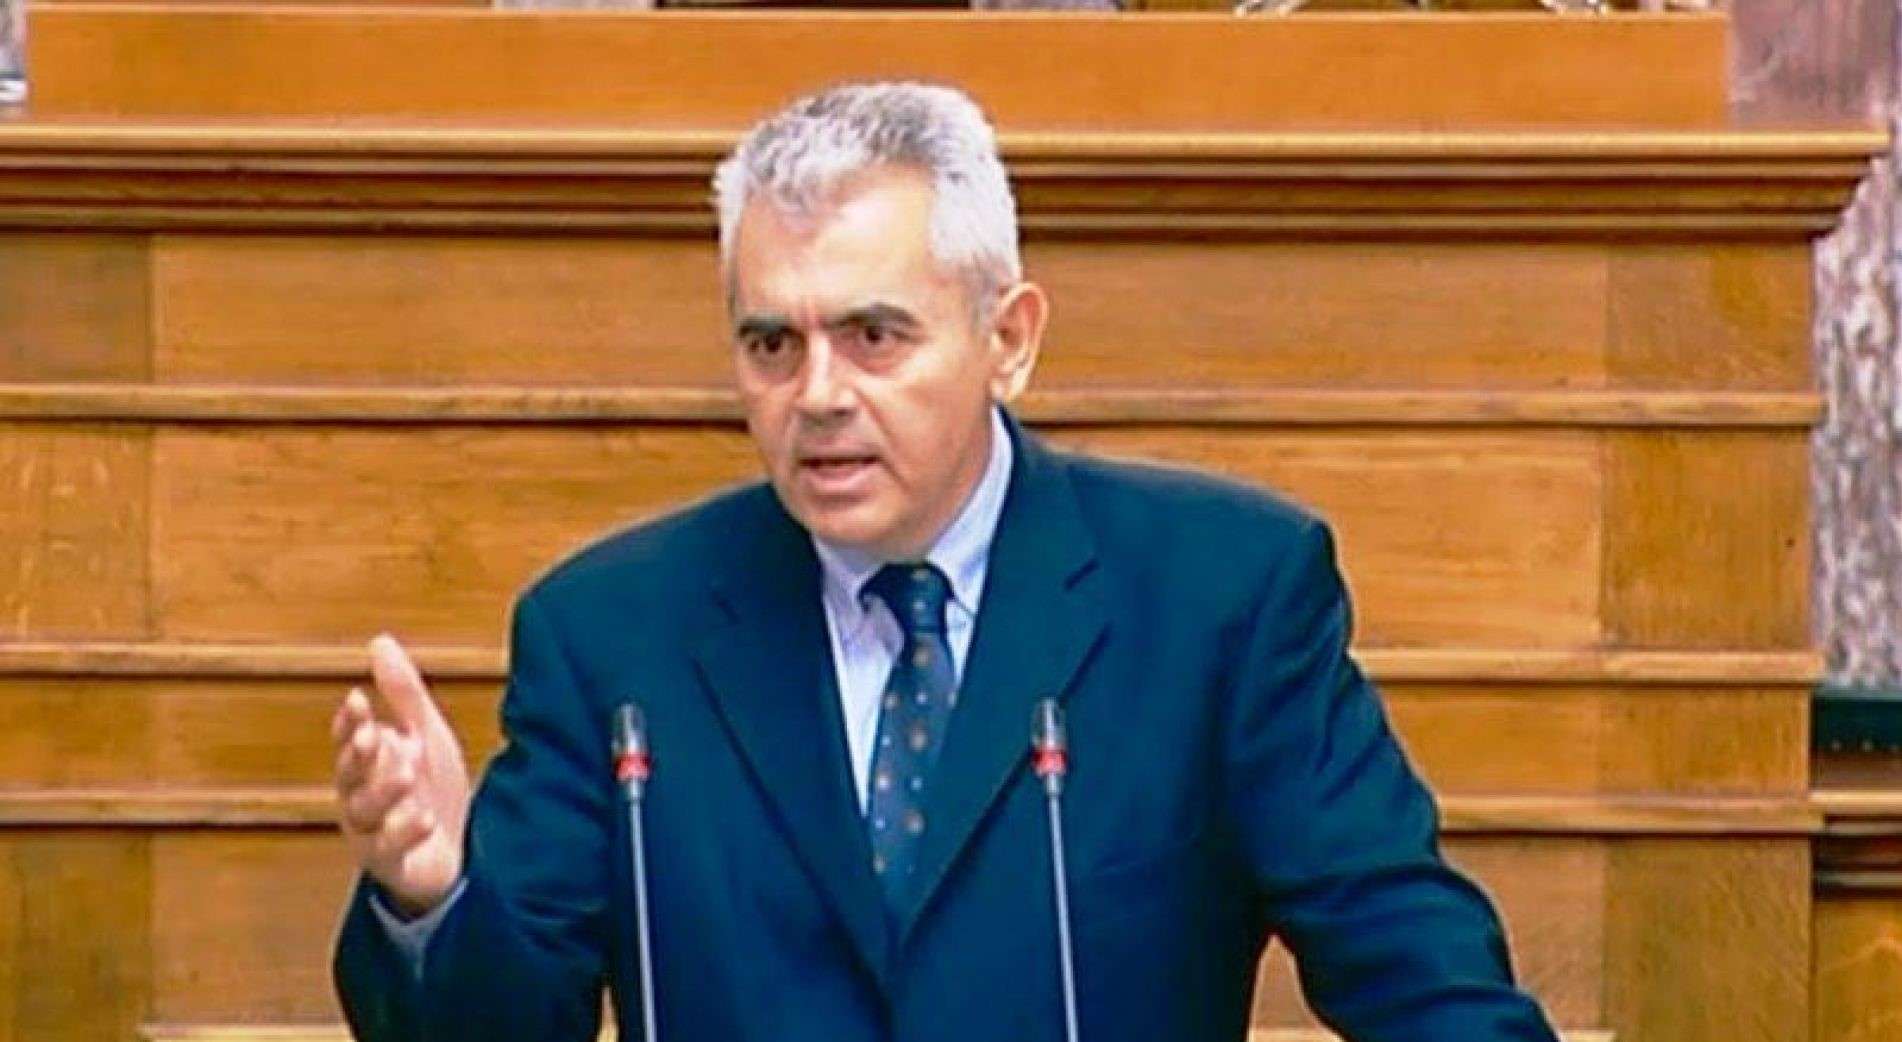 Χαρακόπουλος: η Άγκυρα να αποδεχτεί την πλήρη εφαρμογή του διεθνούς δικαίου